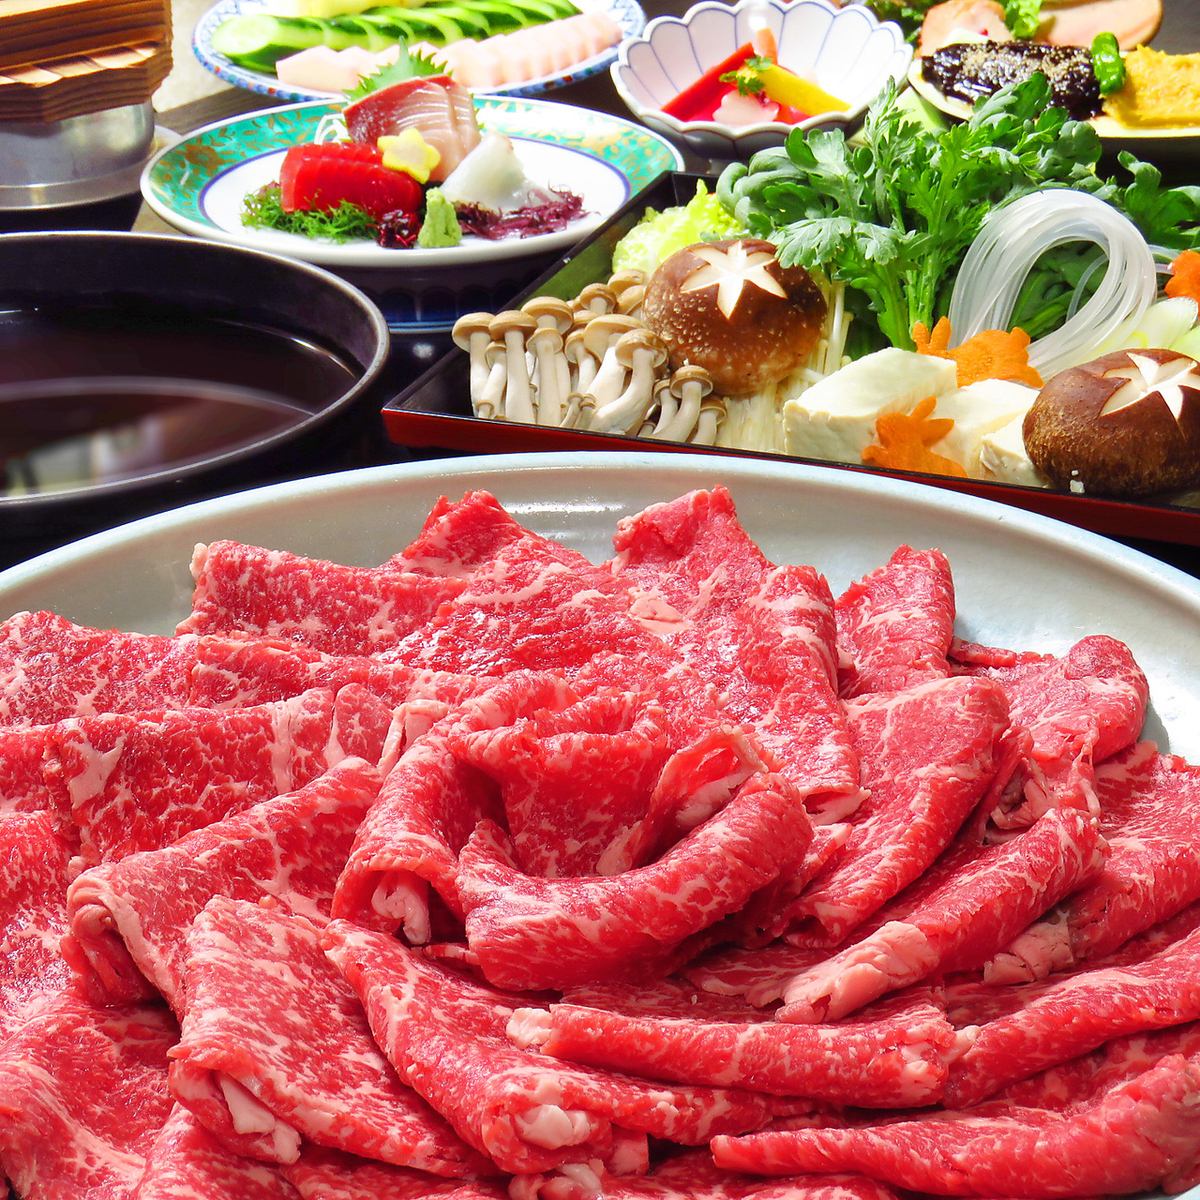 Unme牛肉涮鍋或壽喜燒套餐2.5小時無限暢飲6,000日圓